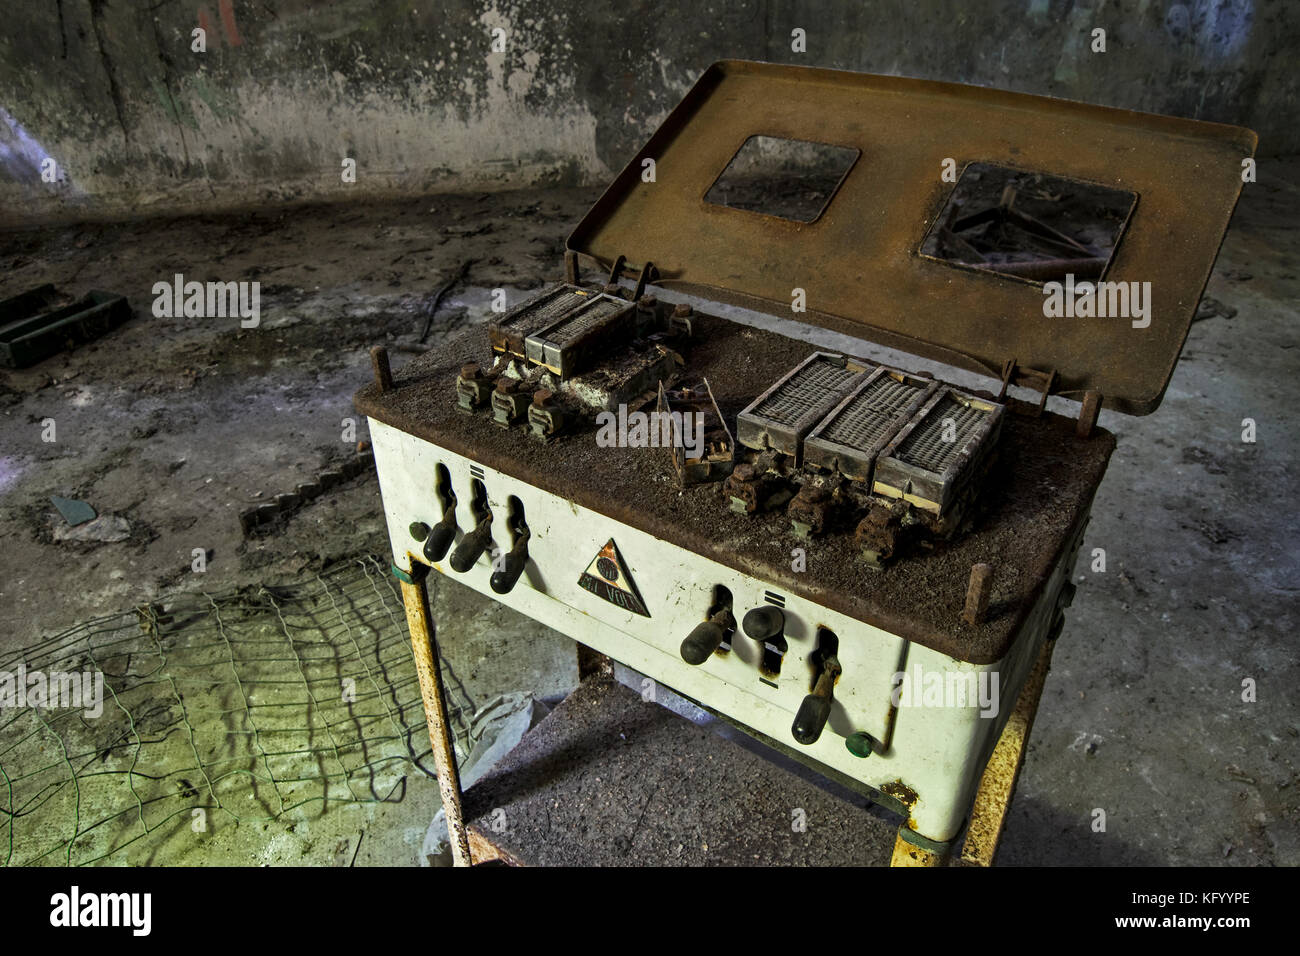 Ein Blick auf einen alten Elektro Schock Gerät, in einem verlassenen  psychiatrischen Krankenhaus Stockfotografie - Alamy